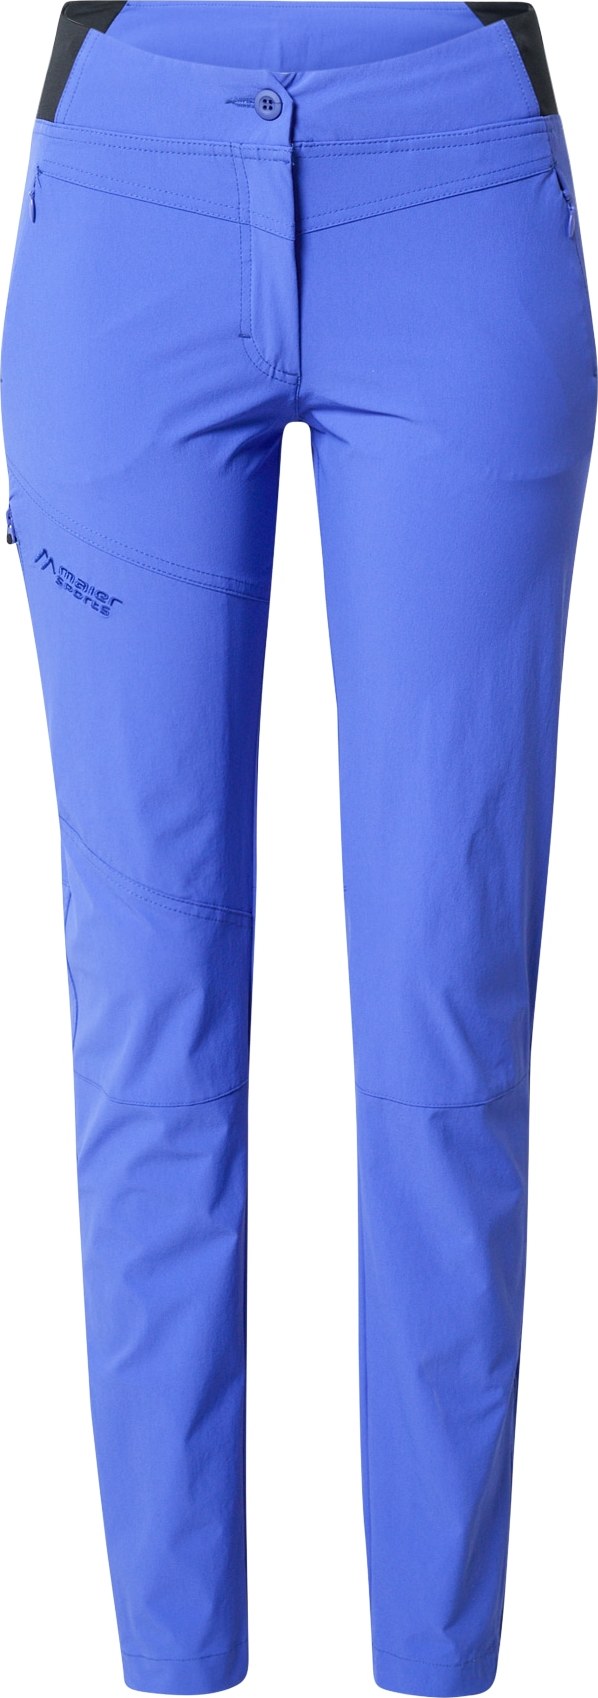 Maier Sports Outdoorové kalhoty 'Inara' nebeská modř